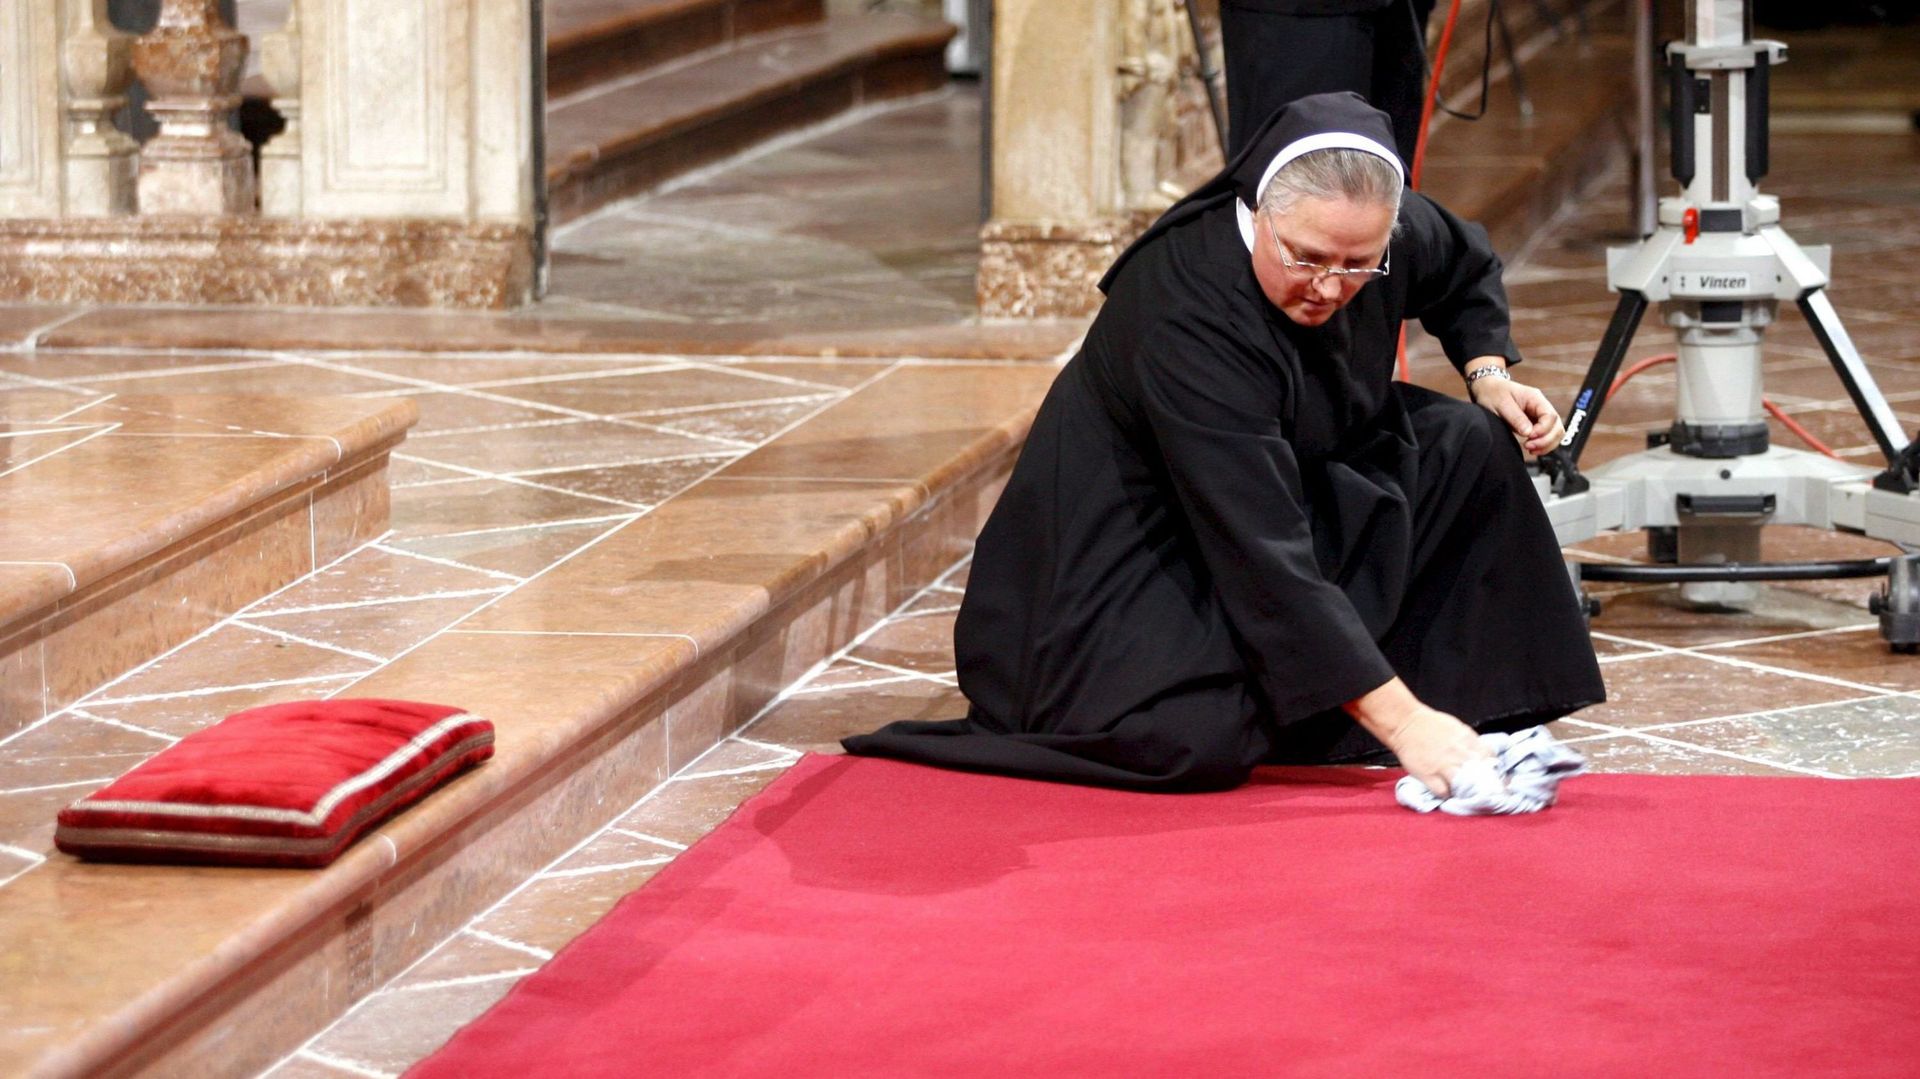 Vent de révolte au Vatican: "des nonnes travaillent comme des esclaves pour le compte de certains prélats"